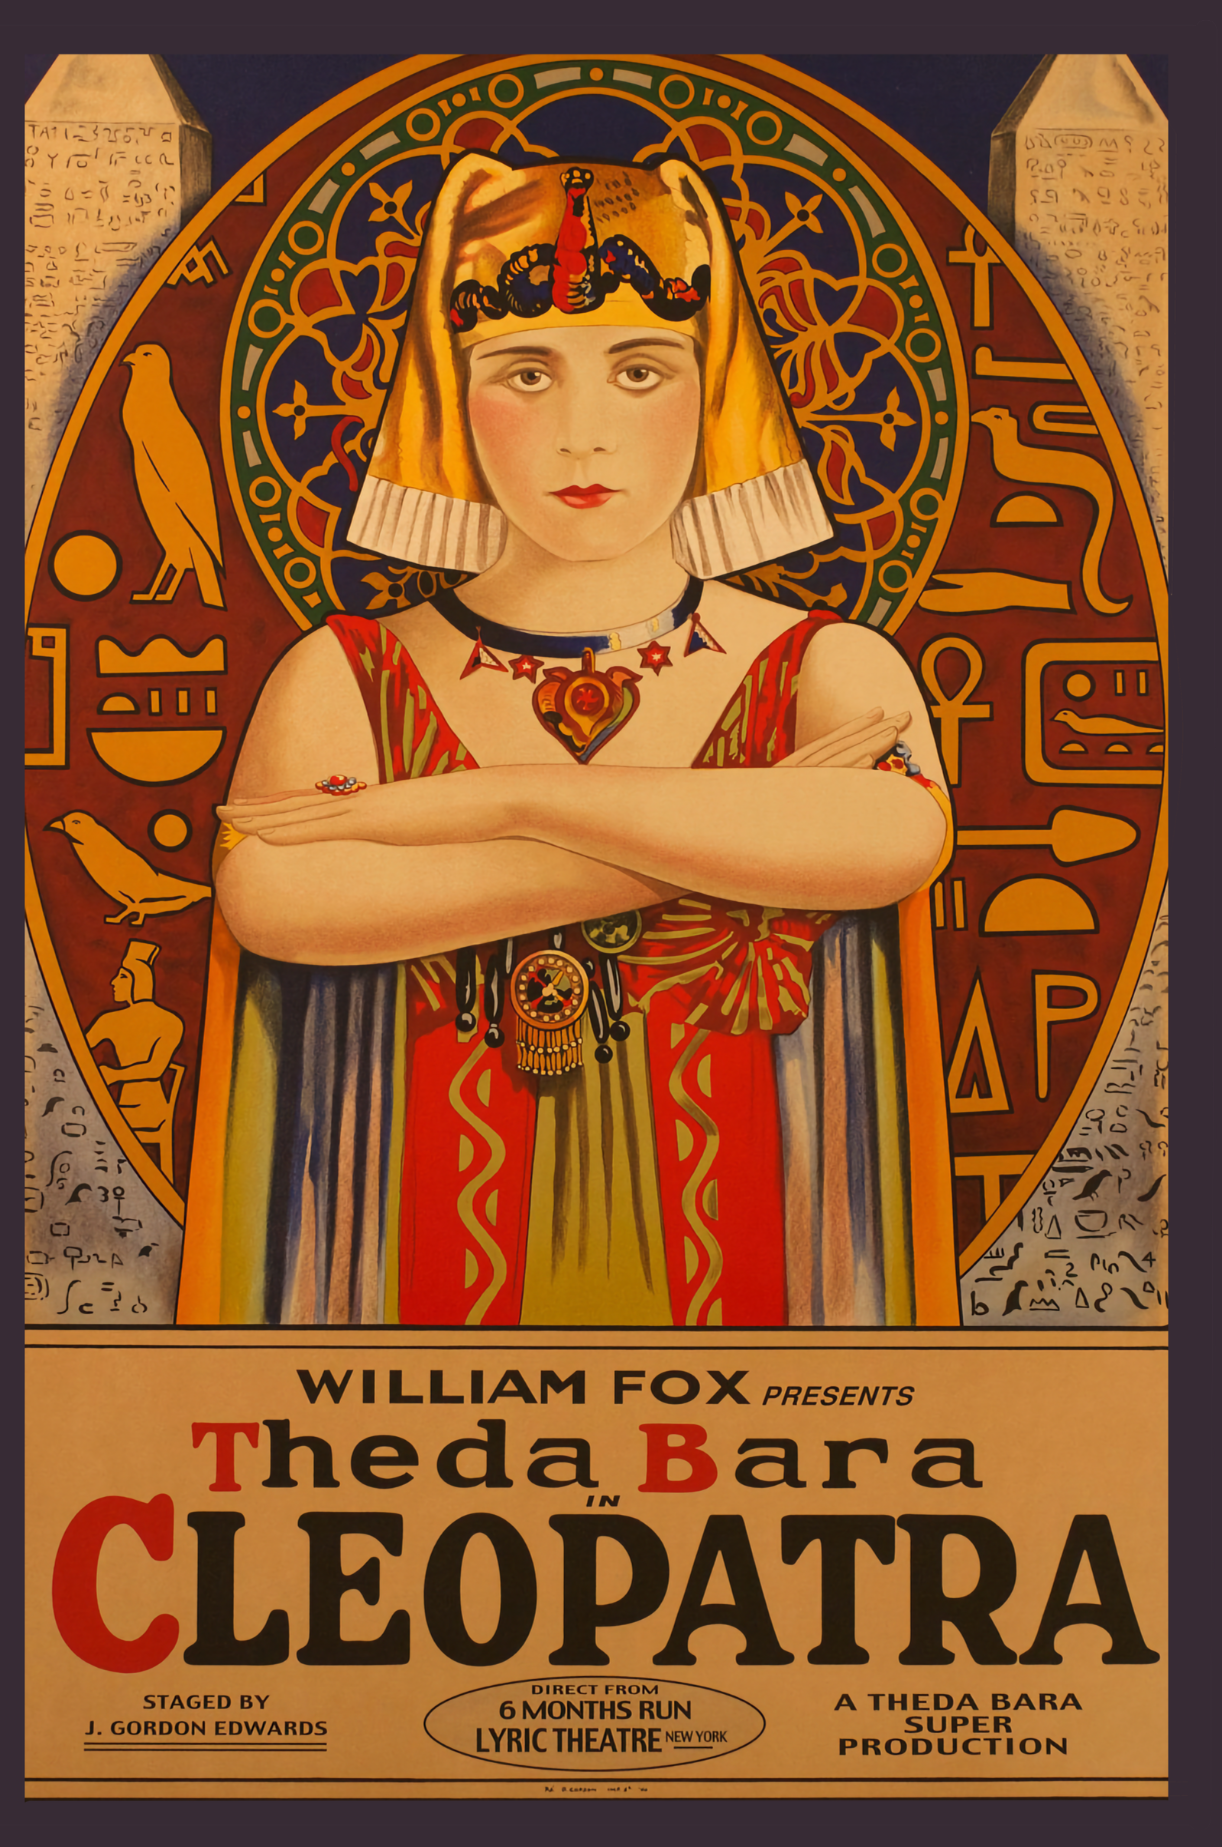 Cartel de la película muda 'Cleopatra' protagonizada por Theda Bara en 1917 - Postal